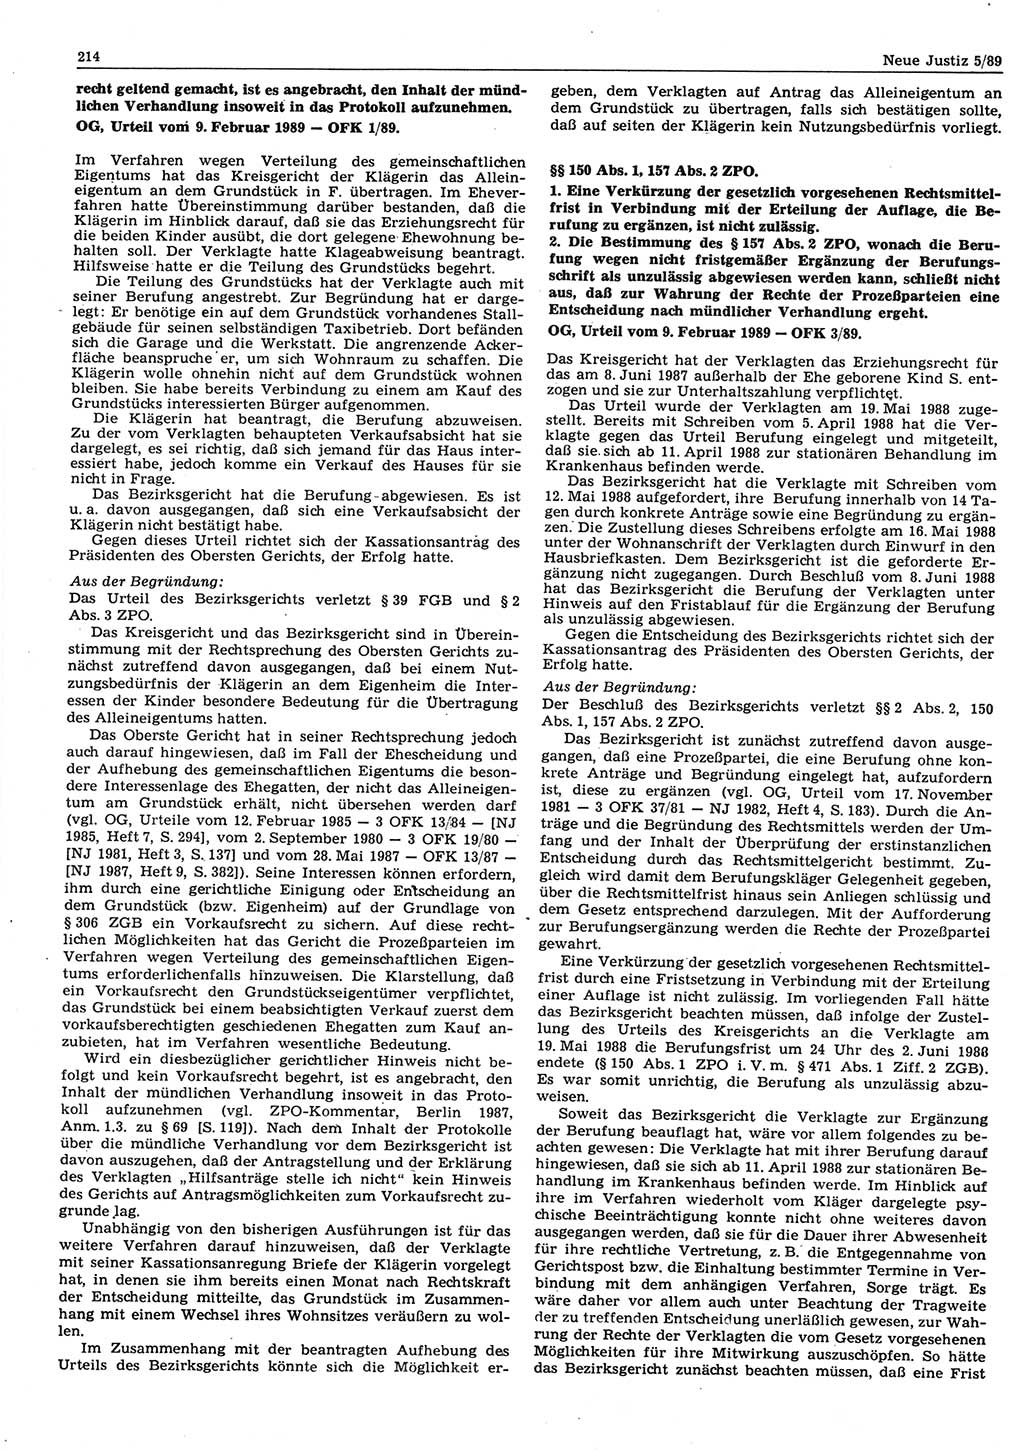 Neue Justiz (NJ), Zeitschrift für sozialistisches Recht und Gesetzlichkeit [Deutsche Demokratische Republik (DDR)], 43. Jahrgang 1989, Seite 214 (NJ DDR 1989, S. 214)